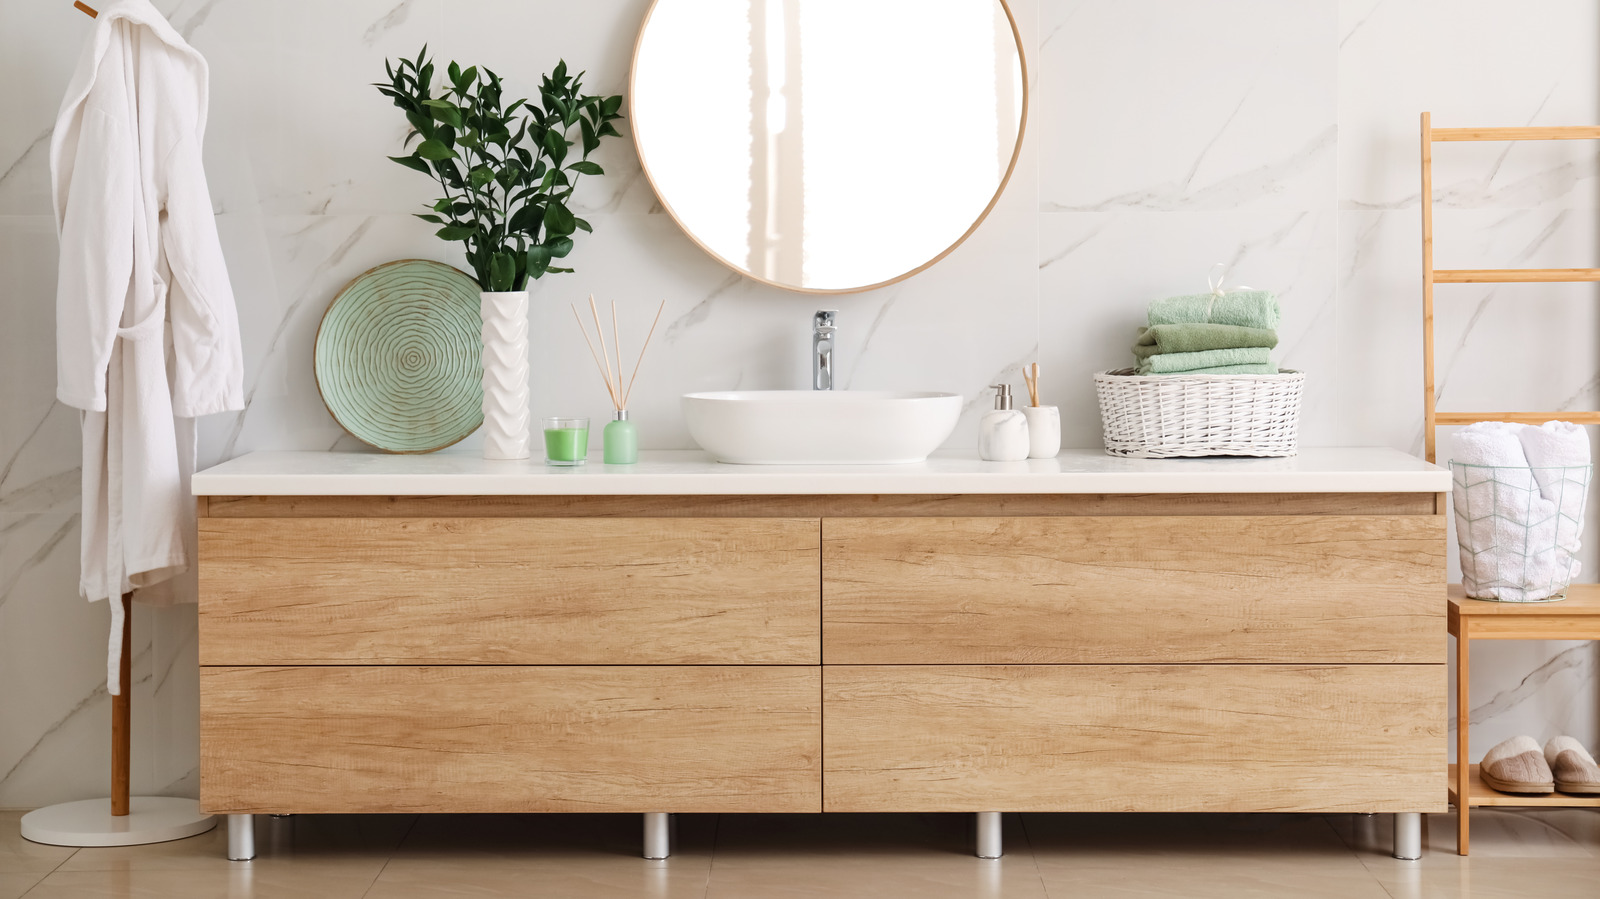 Get an Organized Bathroom Vanity in 5 Simple Steps